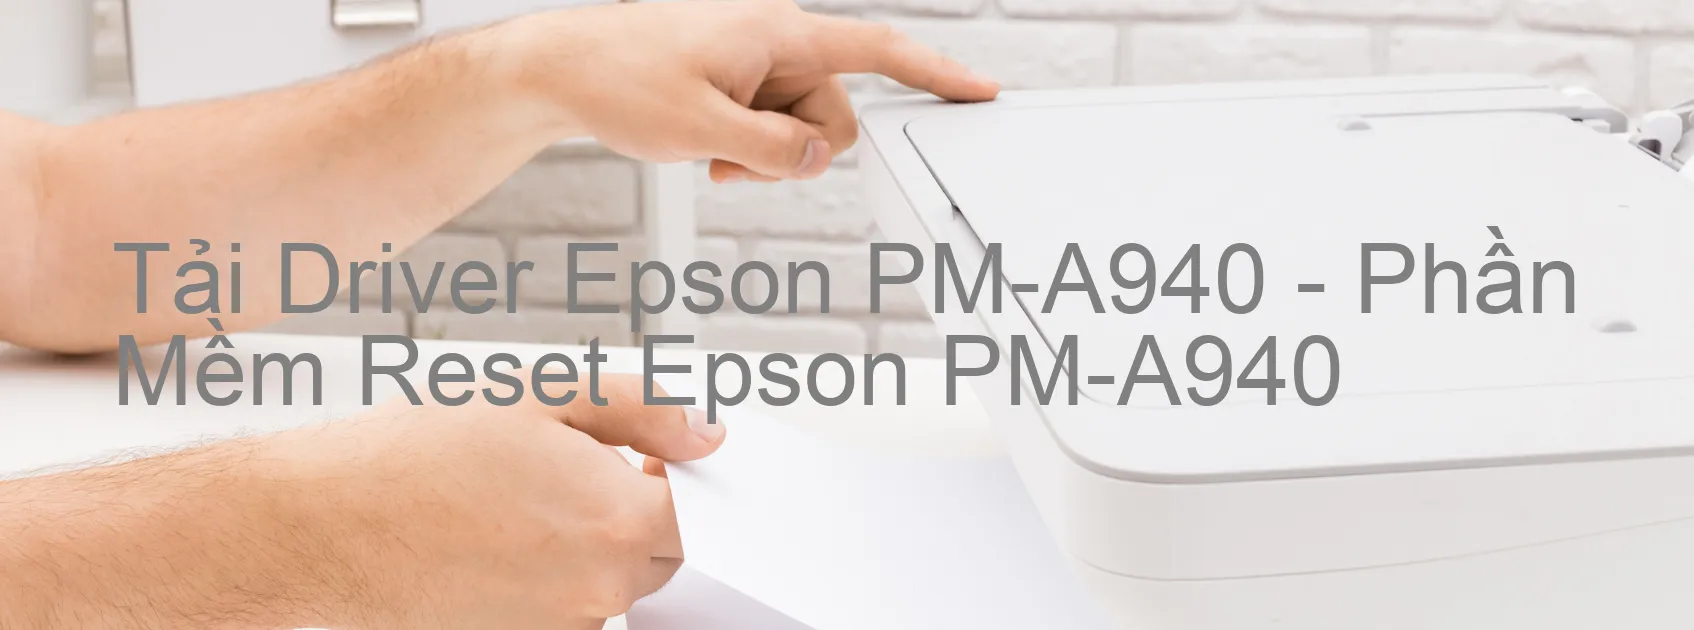 Driver Epson PM-A940, Phần Mềm Reset Epson PM-A940